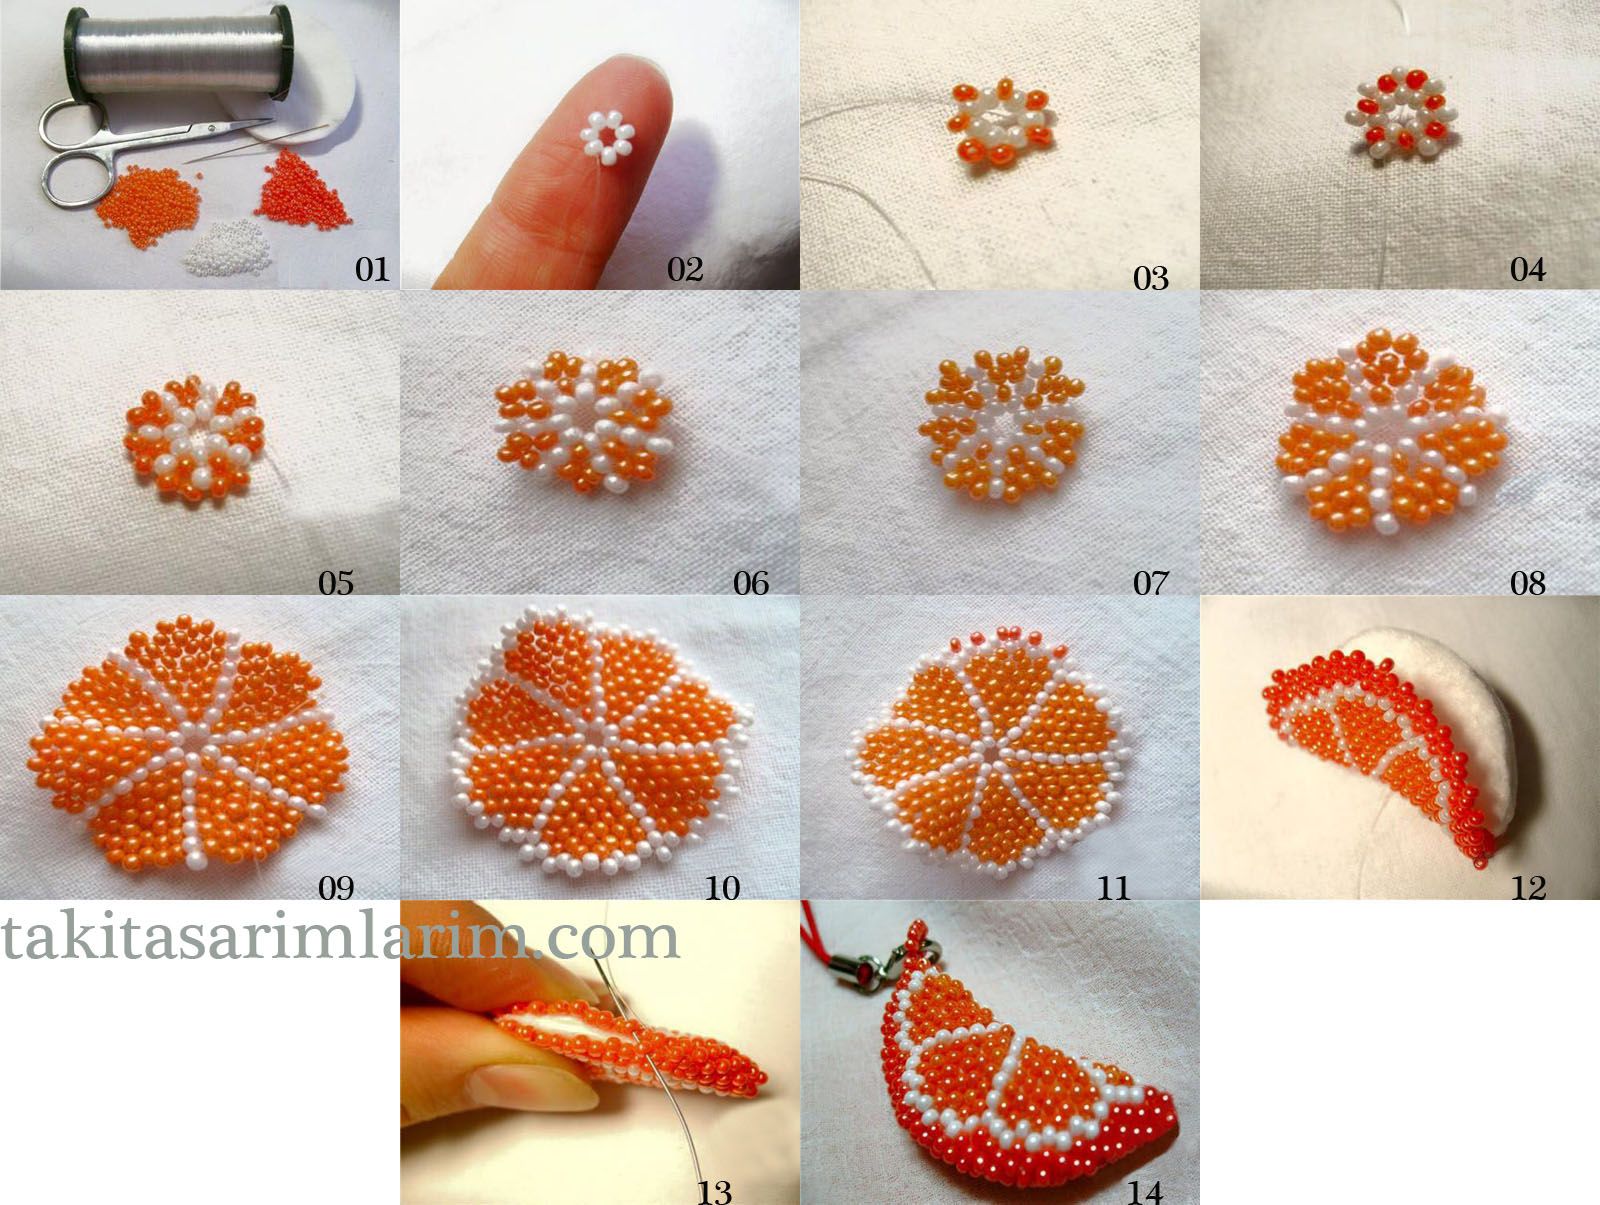 Как сделать брелок из бисера своими руками: подробные схемы морской звезды, машины, апельсина